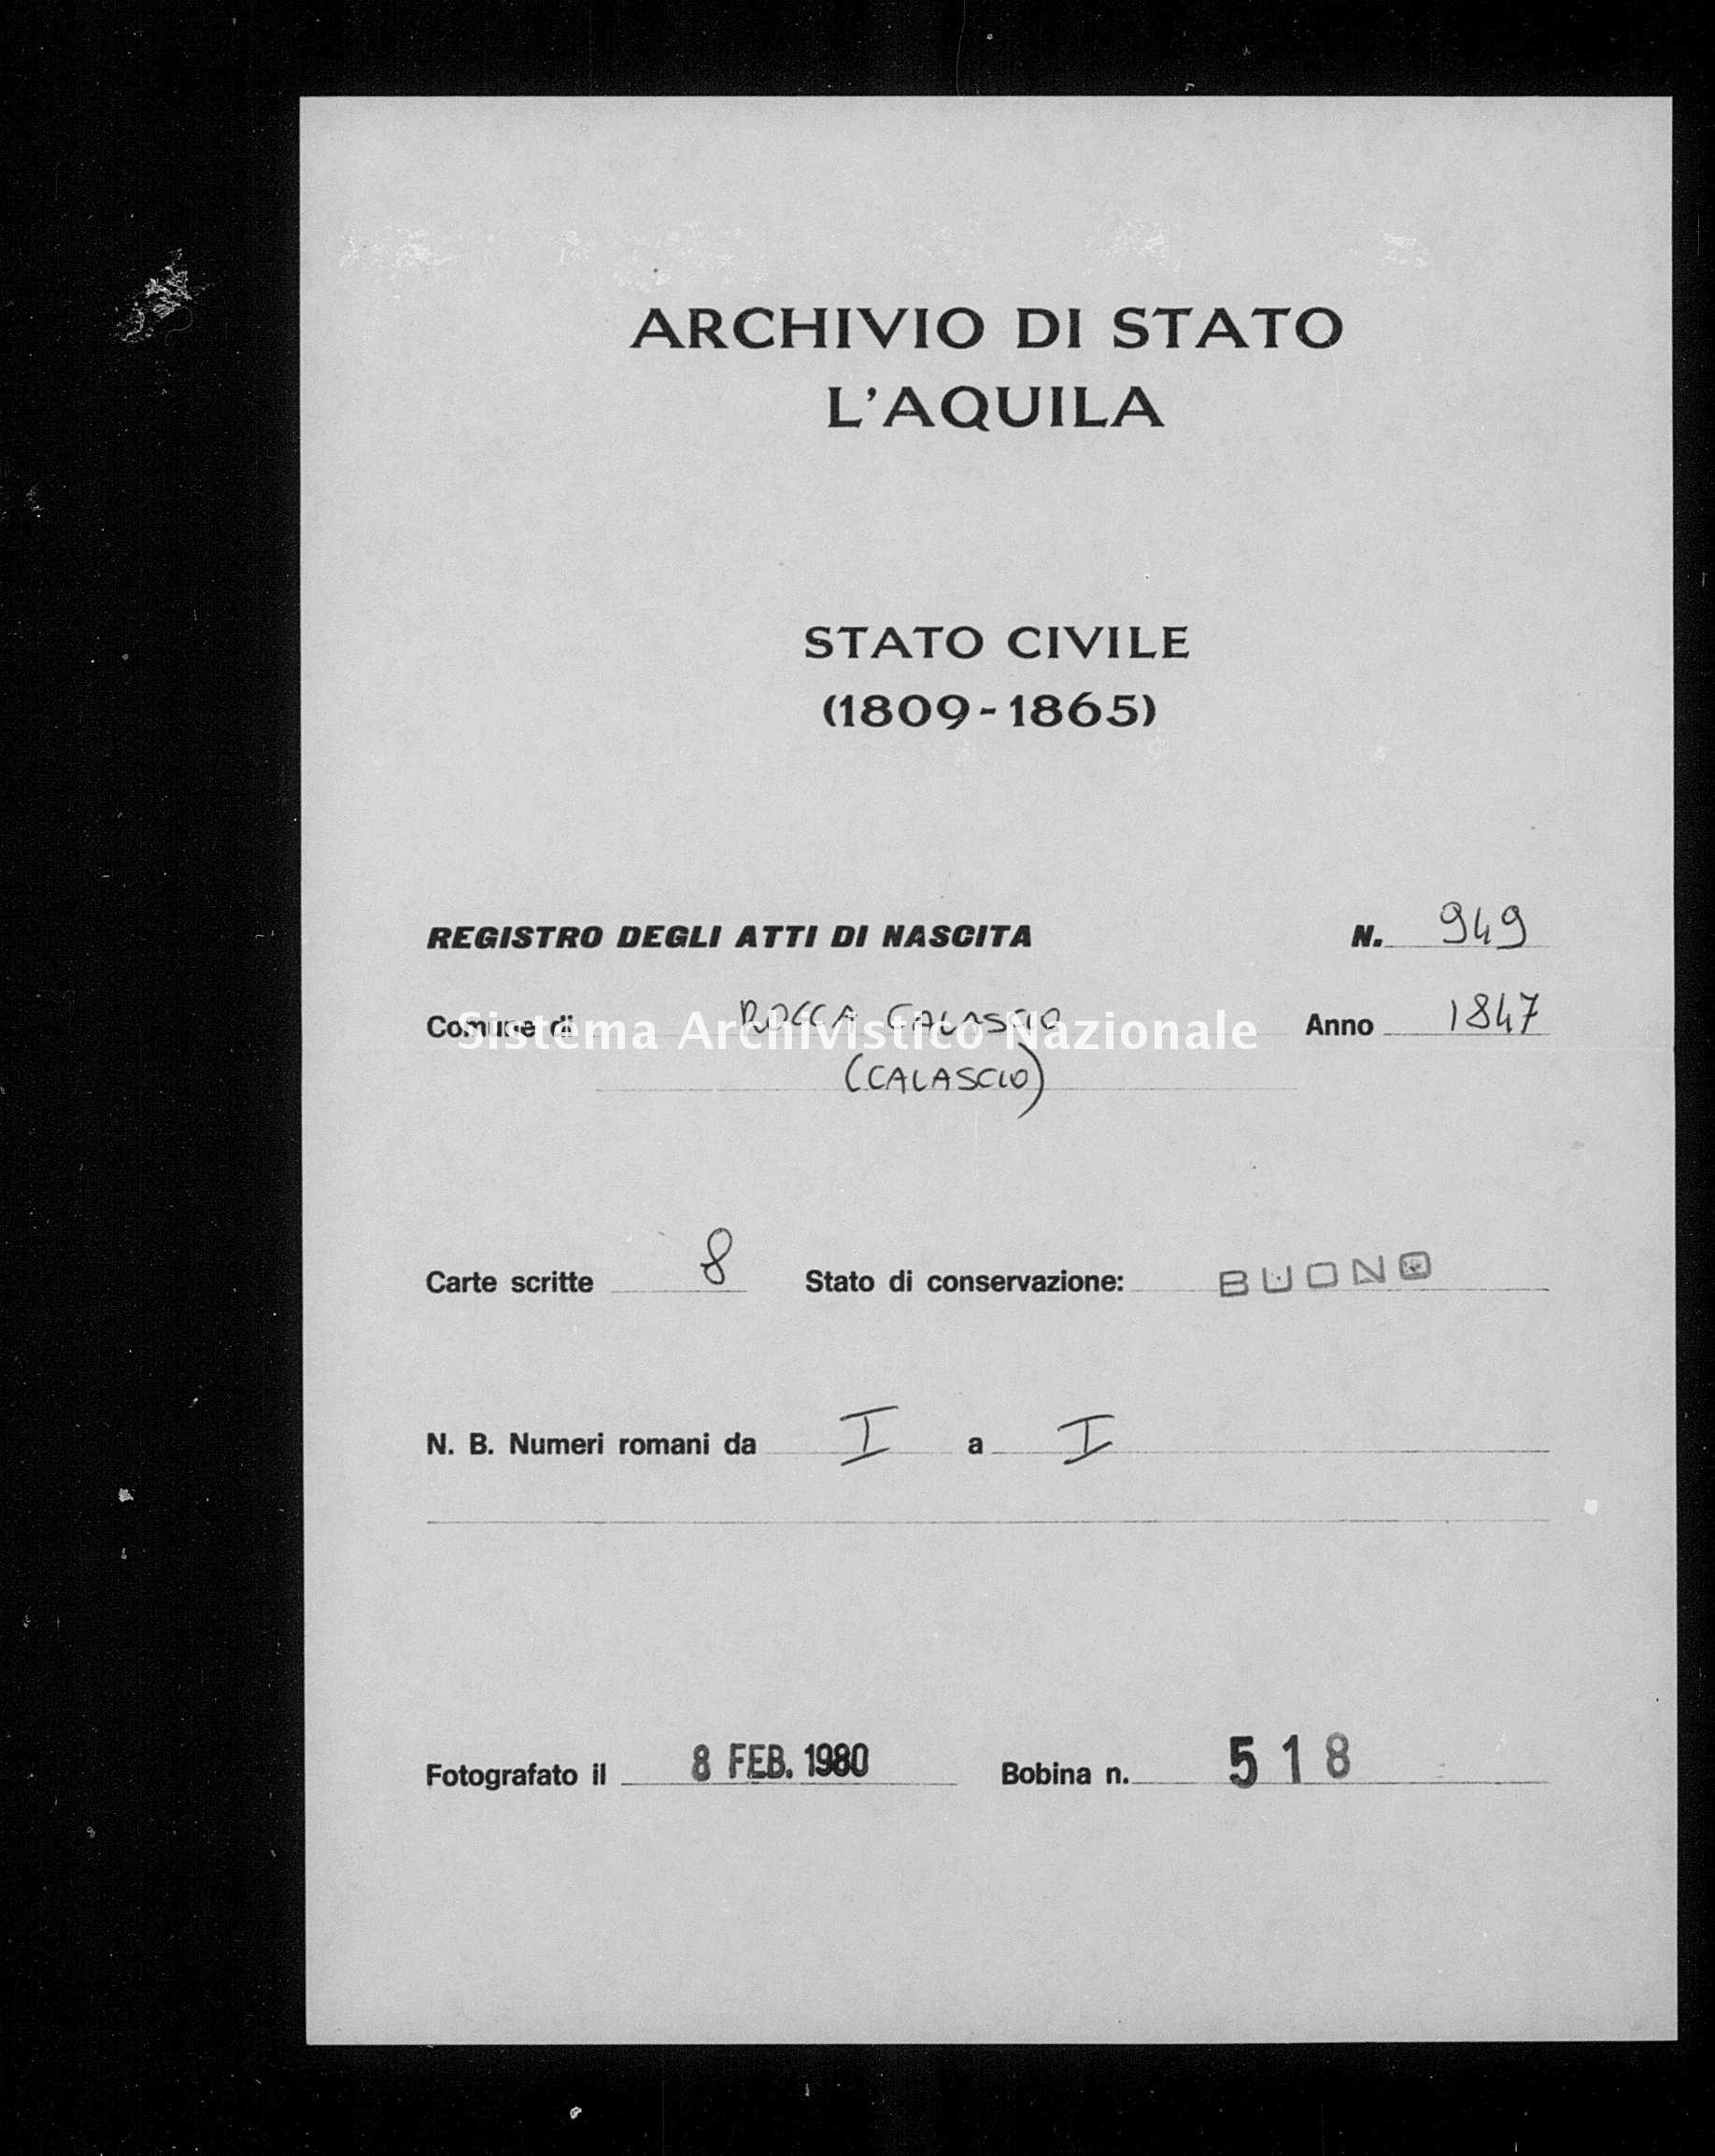 Archivio di stato di L'aquila - Stato civile della restaurazione - Rocca Calascio - Nati - 1847 - 949 -